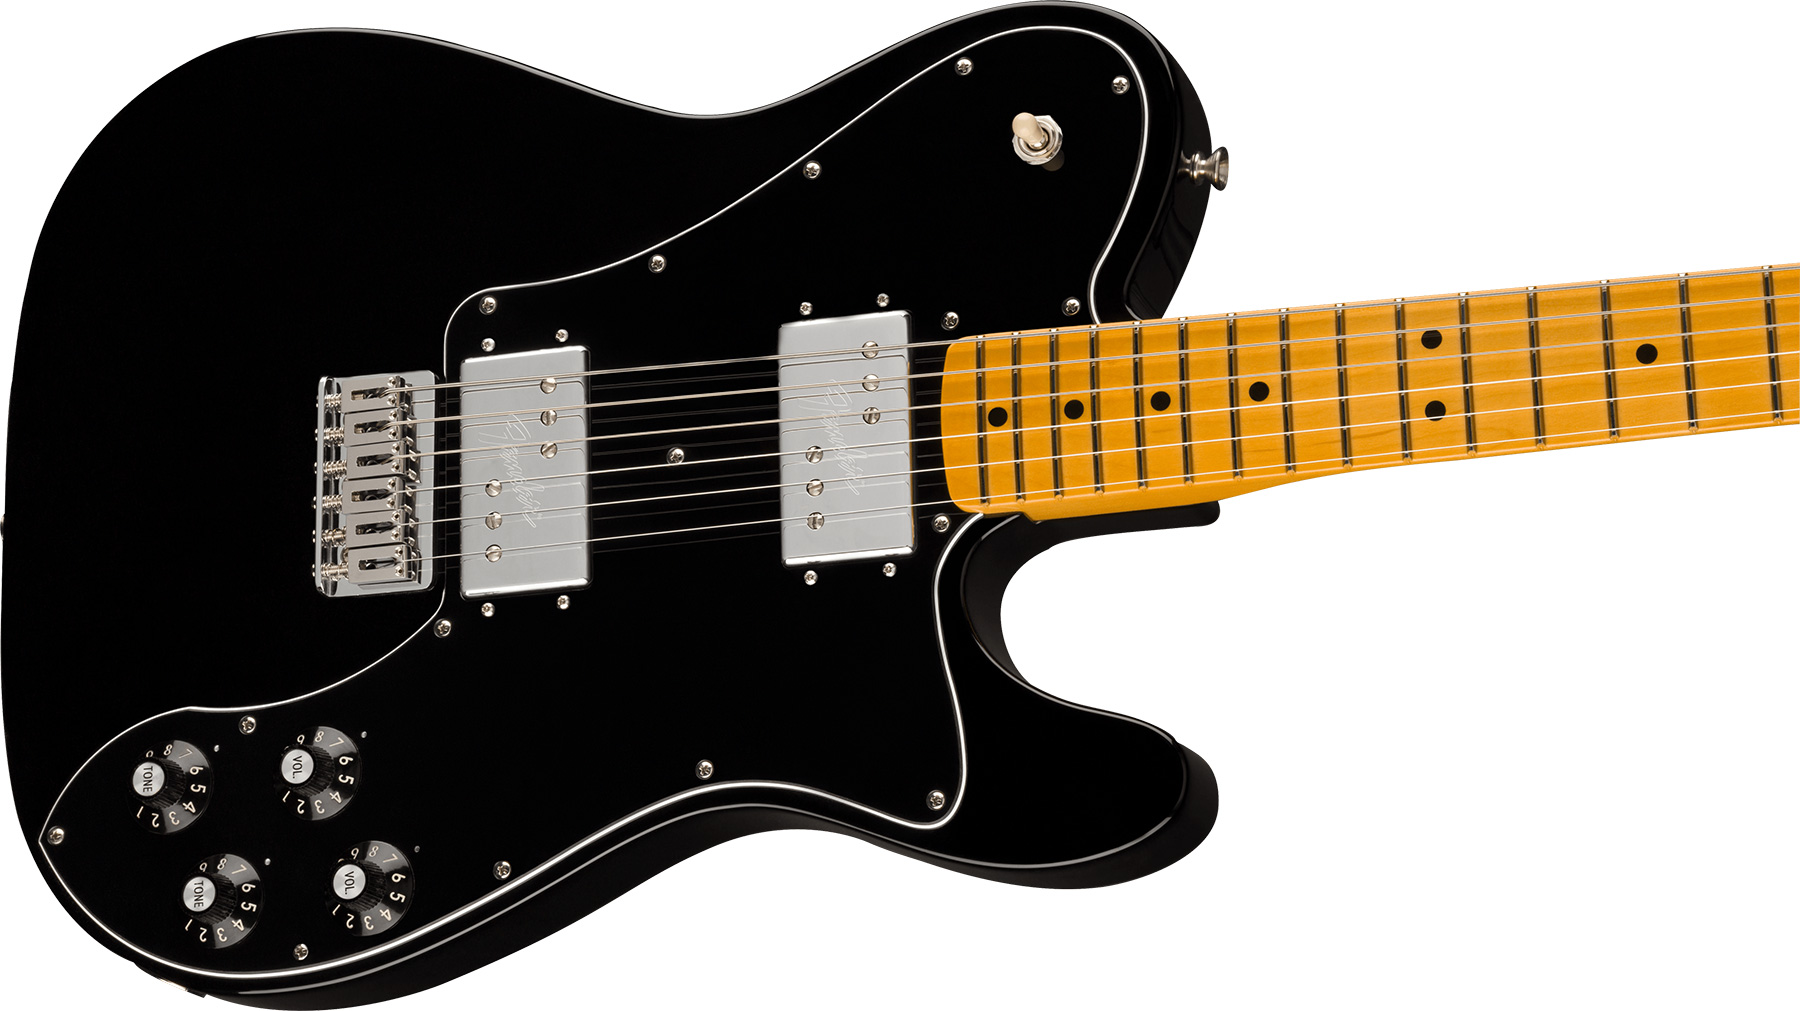 Fender Tele Deluxe 1975 American Vintage Ii Usa 2h Ht Mn - Black - Guitarra eléctrica con forma de tel - Variation 2